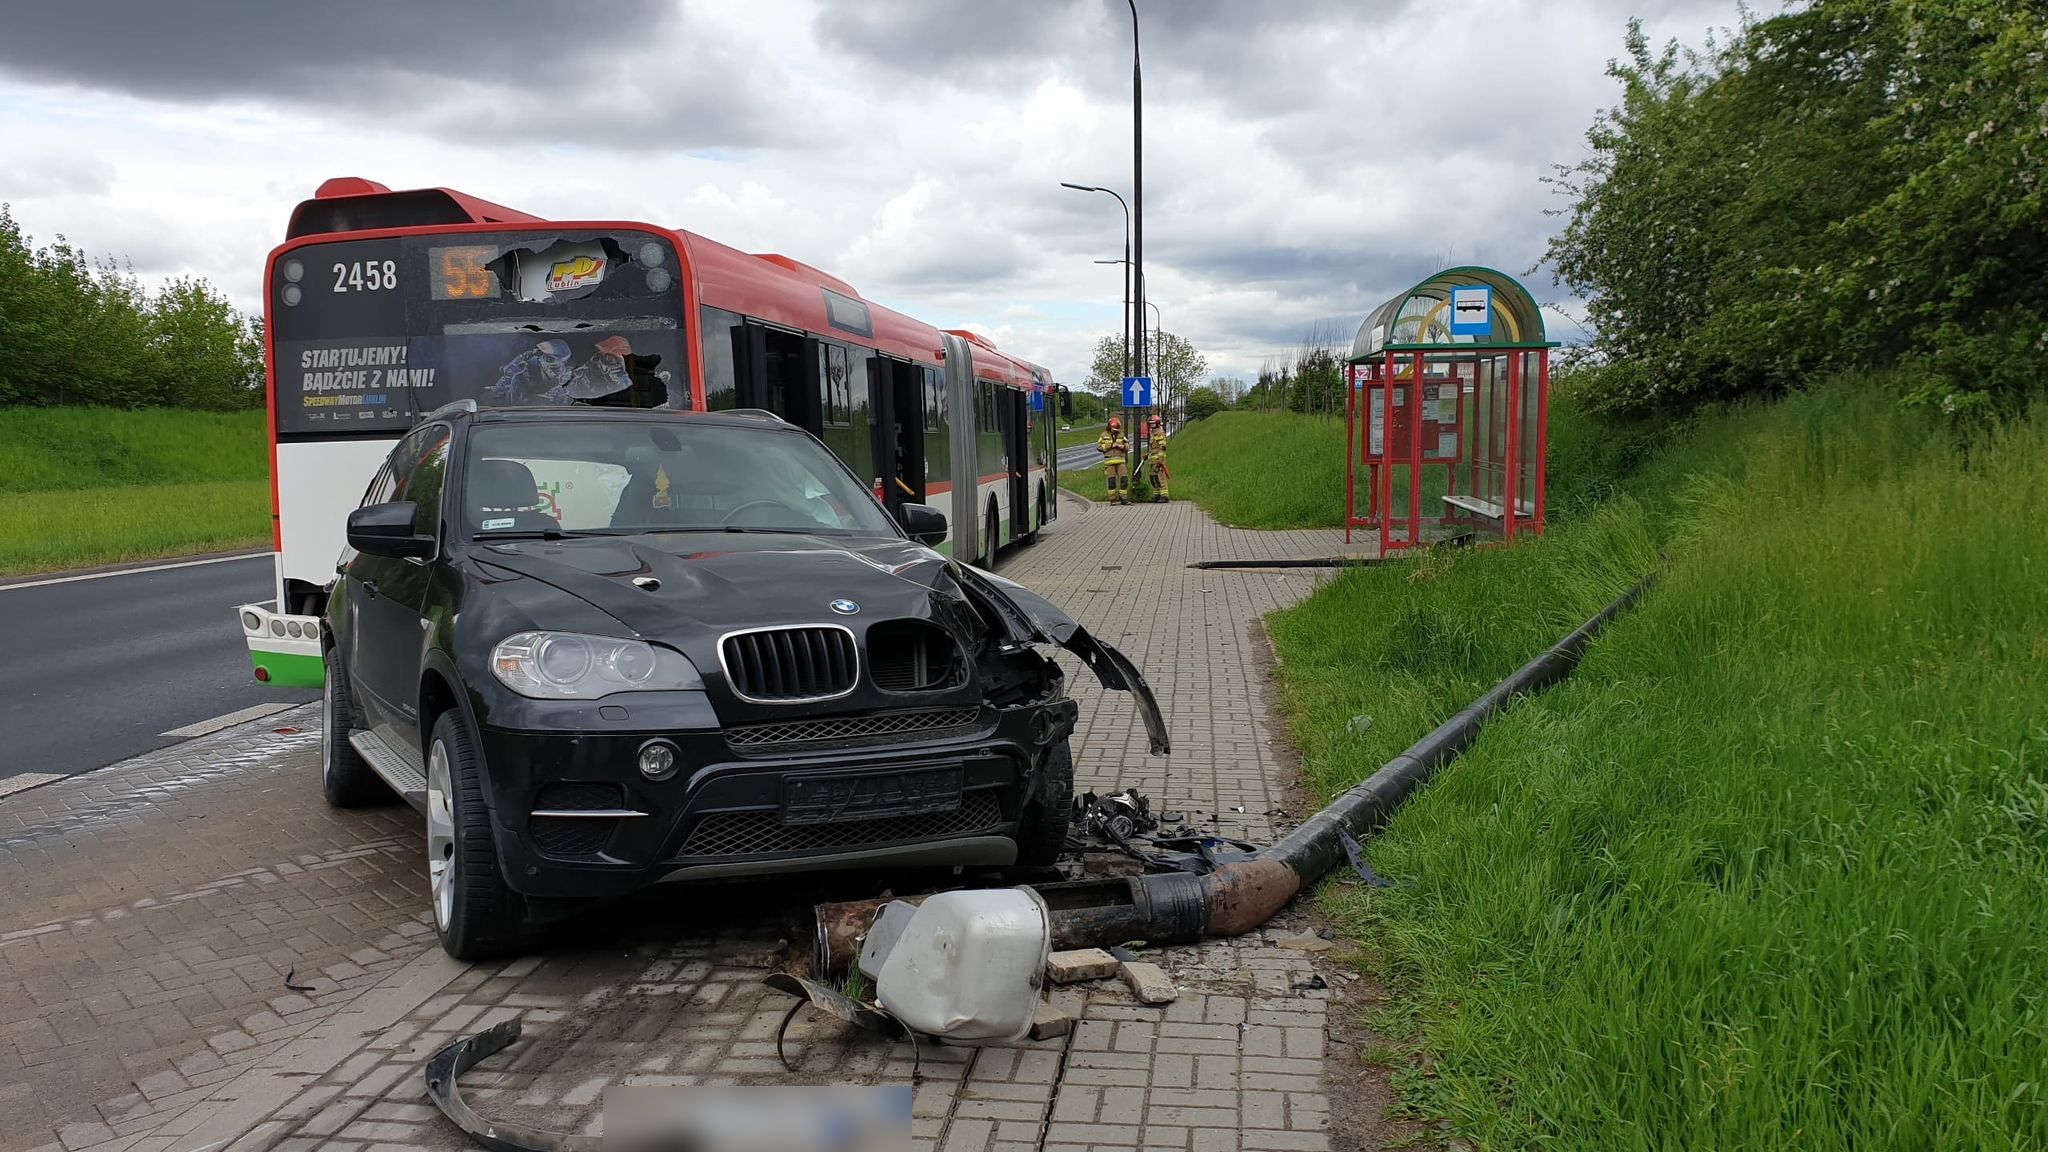 Nie działały światła, starszy mężczyzna doprowadził do zderzenia z BMW i autobusem (zdjęcia)